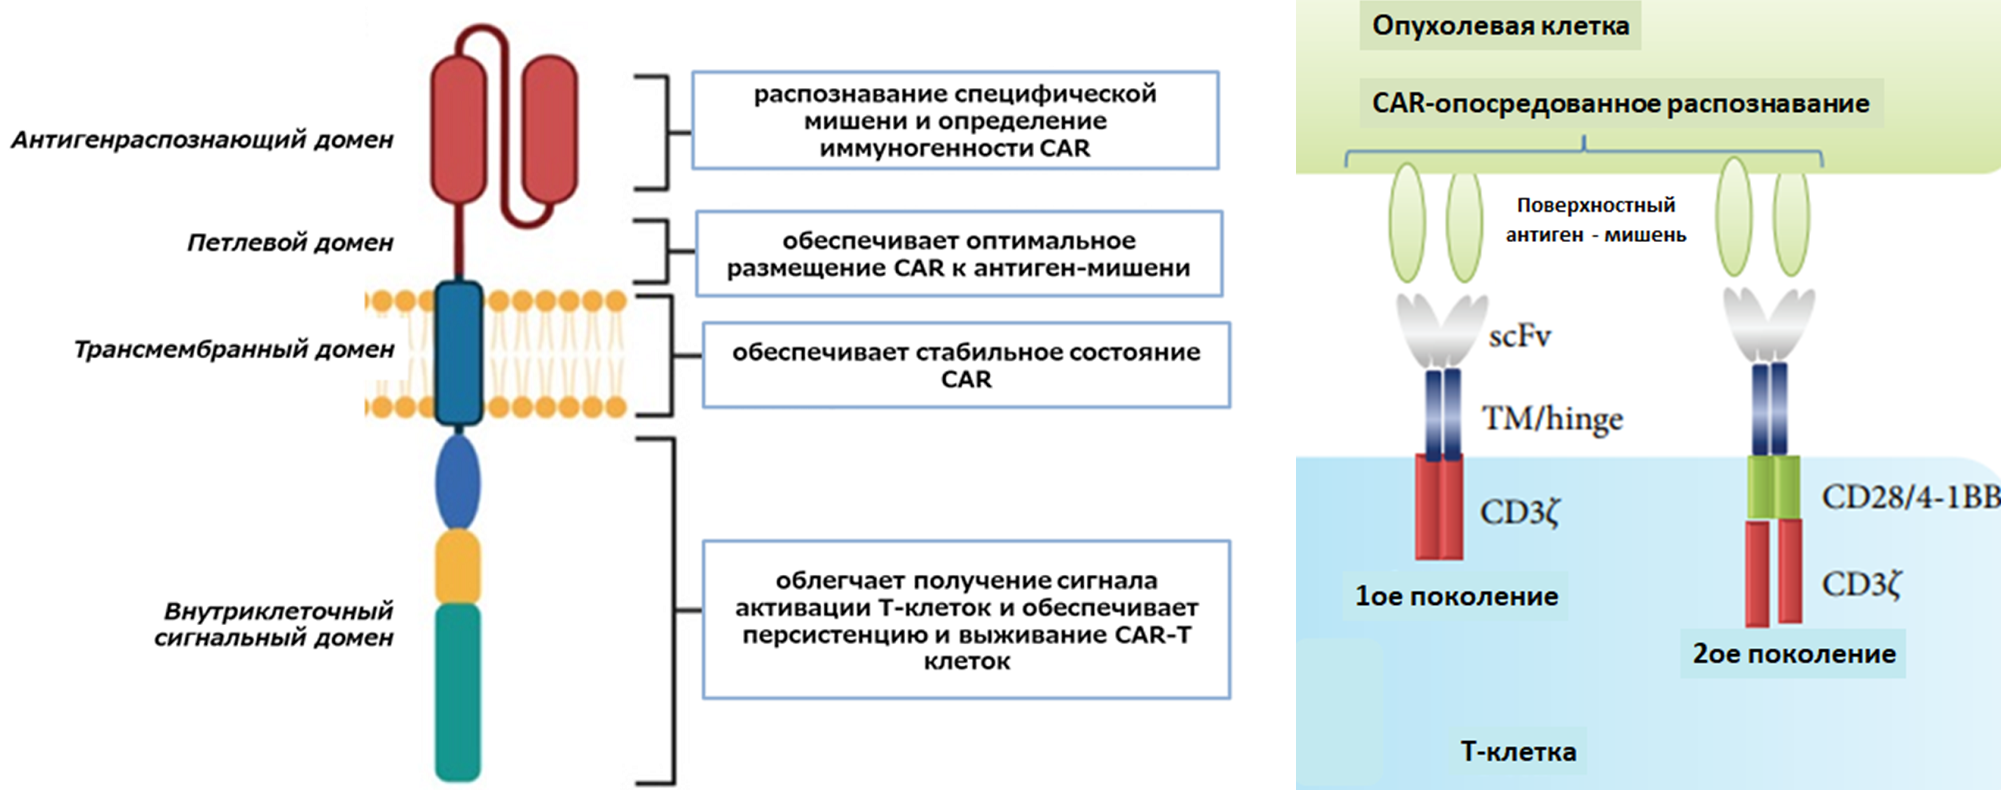  Схема строения химерного антигенраспознающего рецептора (CAR) и функции каждого домена